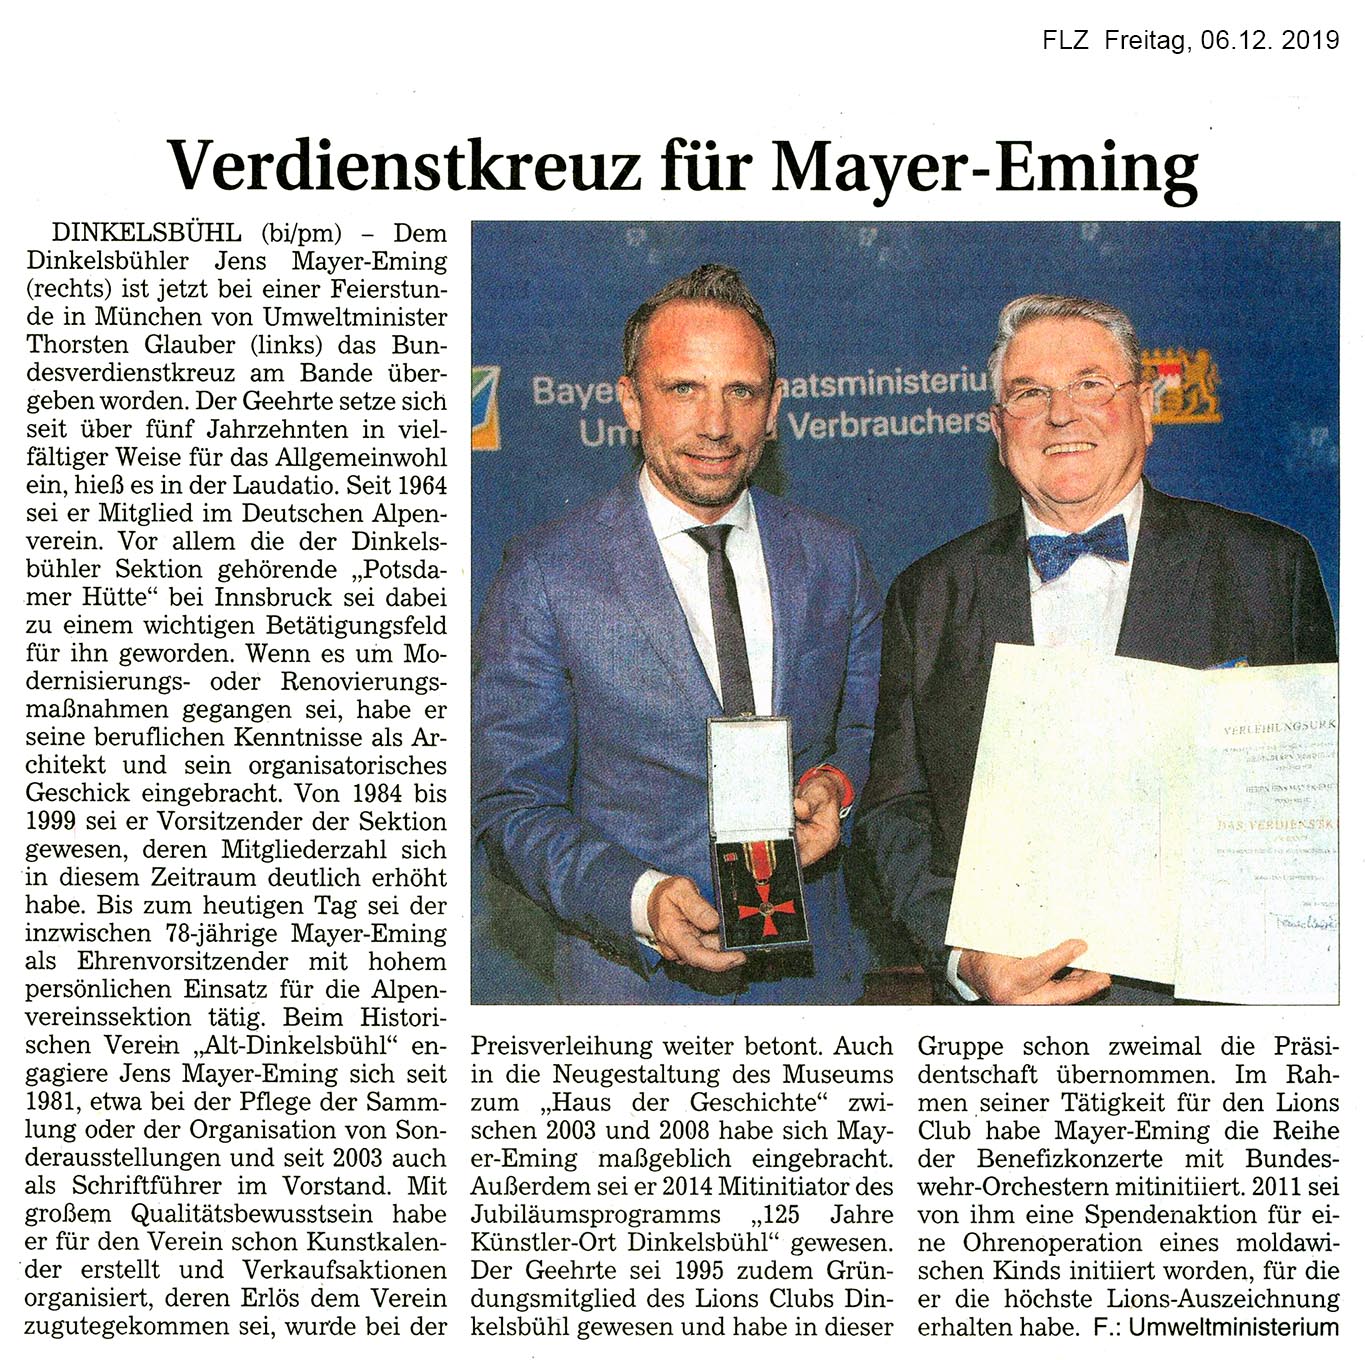 20191206_FLZ_Verdienstkreuz_für_Mayer-Eming_200_6